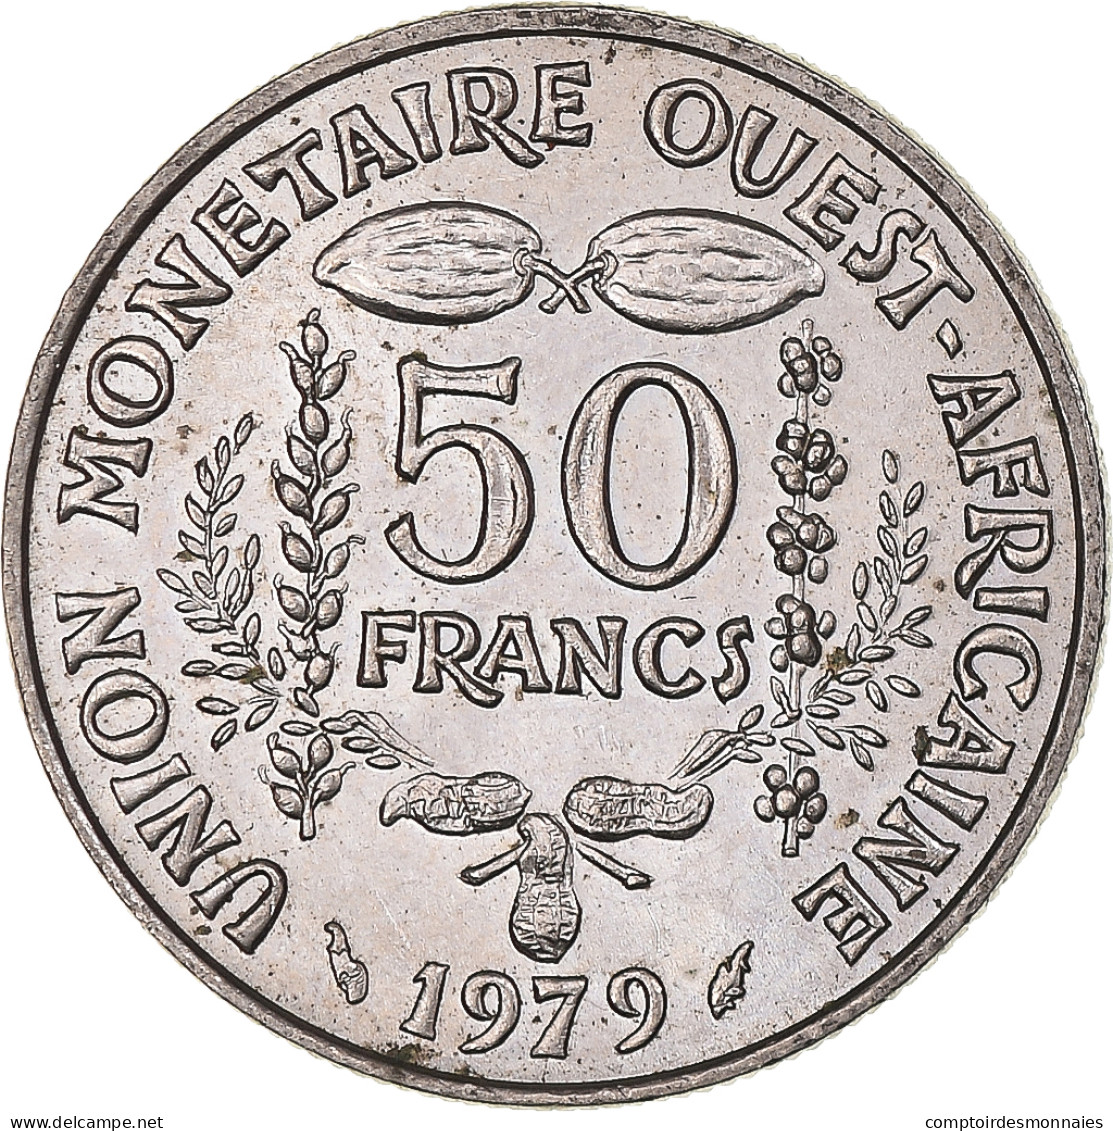 Monnaie, Communauté économique Des États De L'Afrique De L'Ouest, 50 Francs - Elfenbeinküste